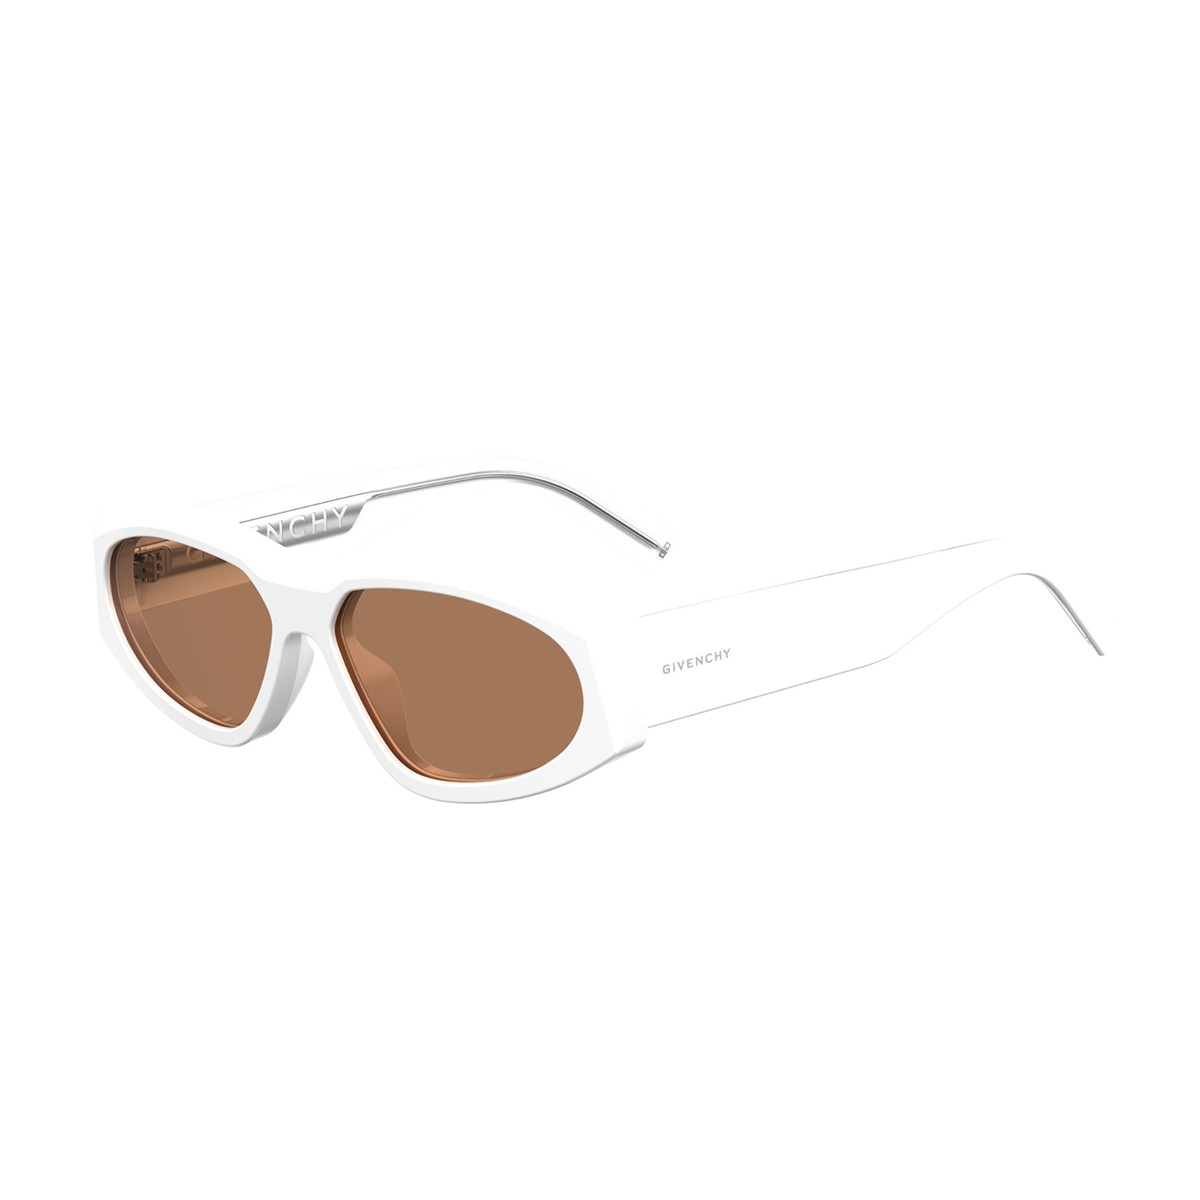 Givenchy Gv 7154/g/s | Unisex sunglasses